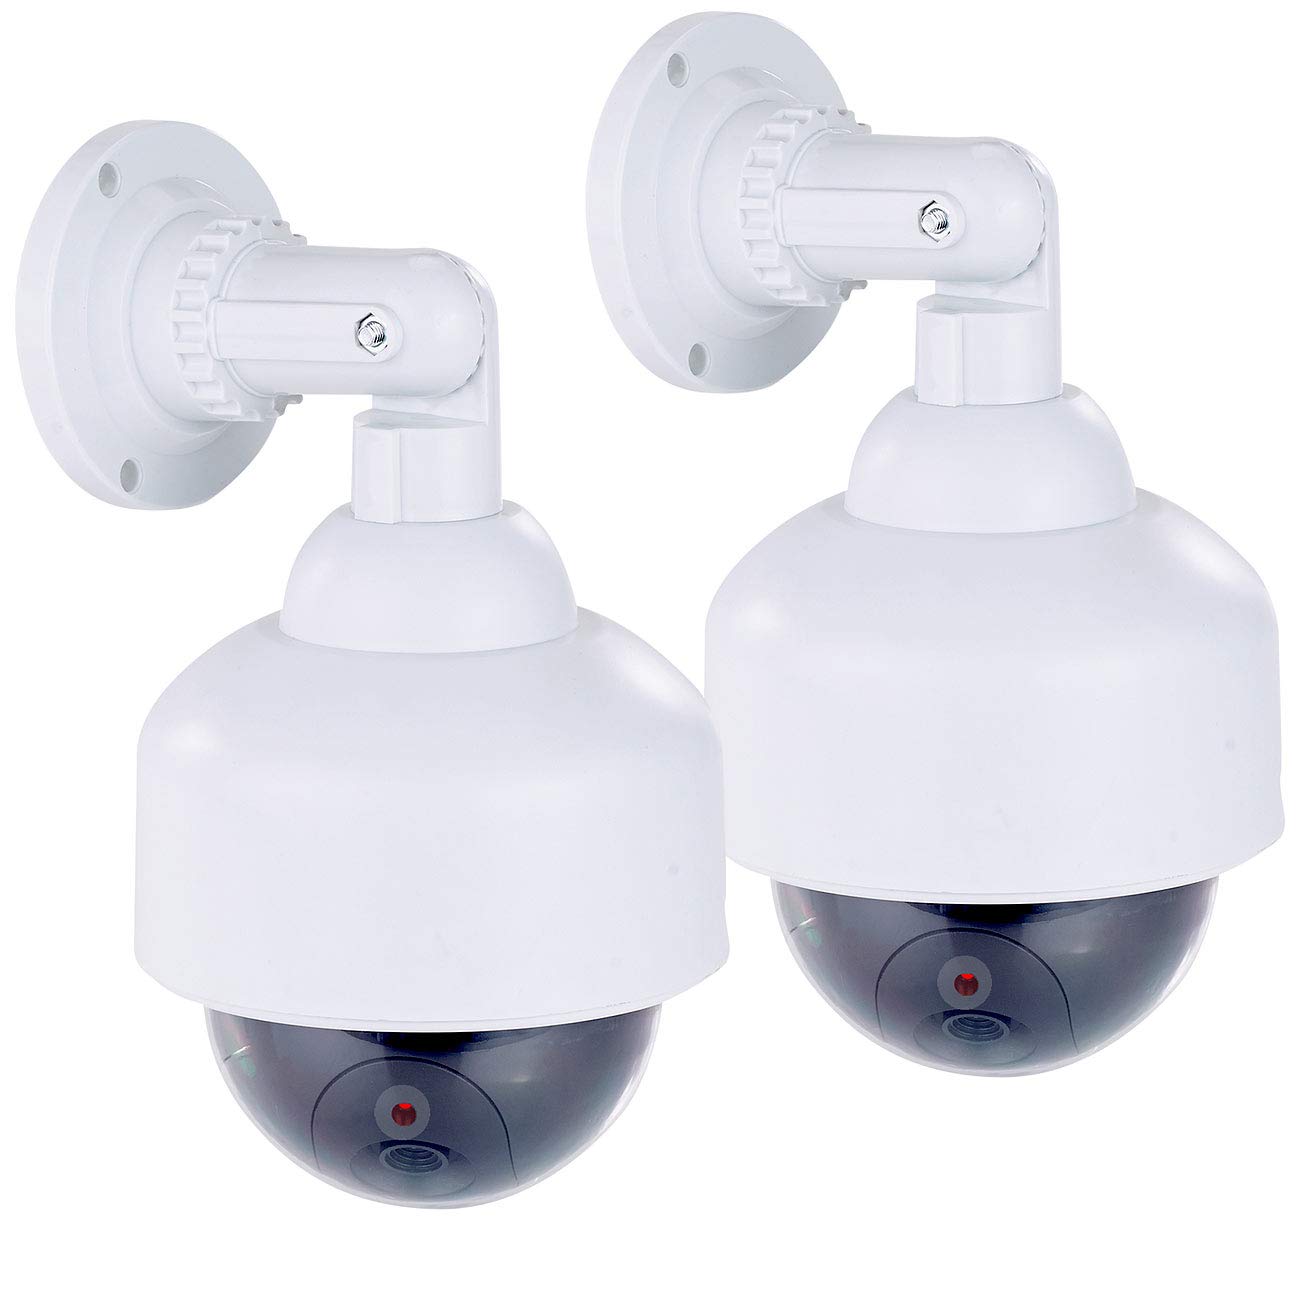 VisorTech Überwachungskameras Fake: 2er-Set Dome-Überwachungskamera-Attrappen, durchsichtige Kuppel (Überwachungs-Attrappe, Dummy-Cam)